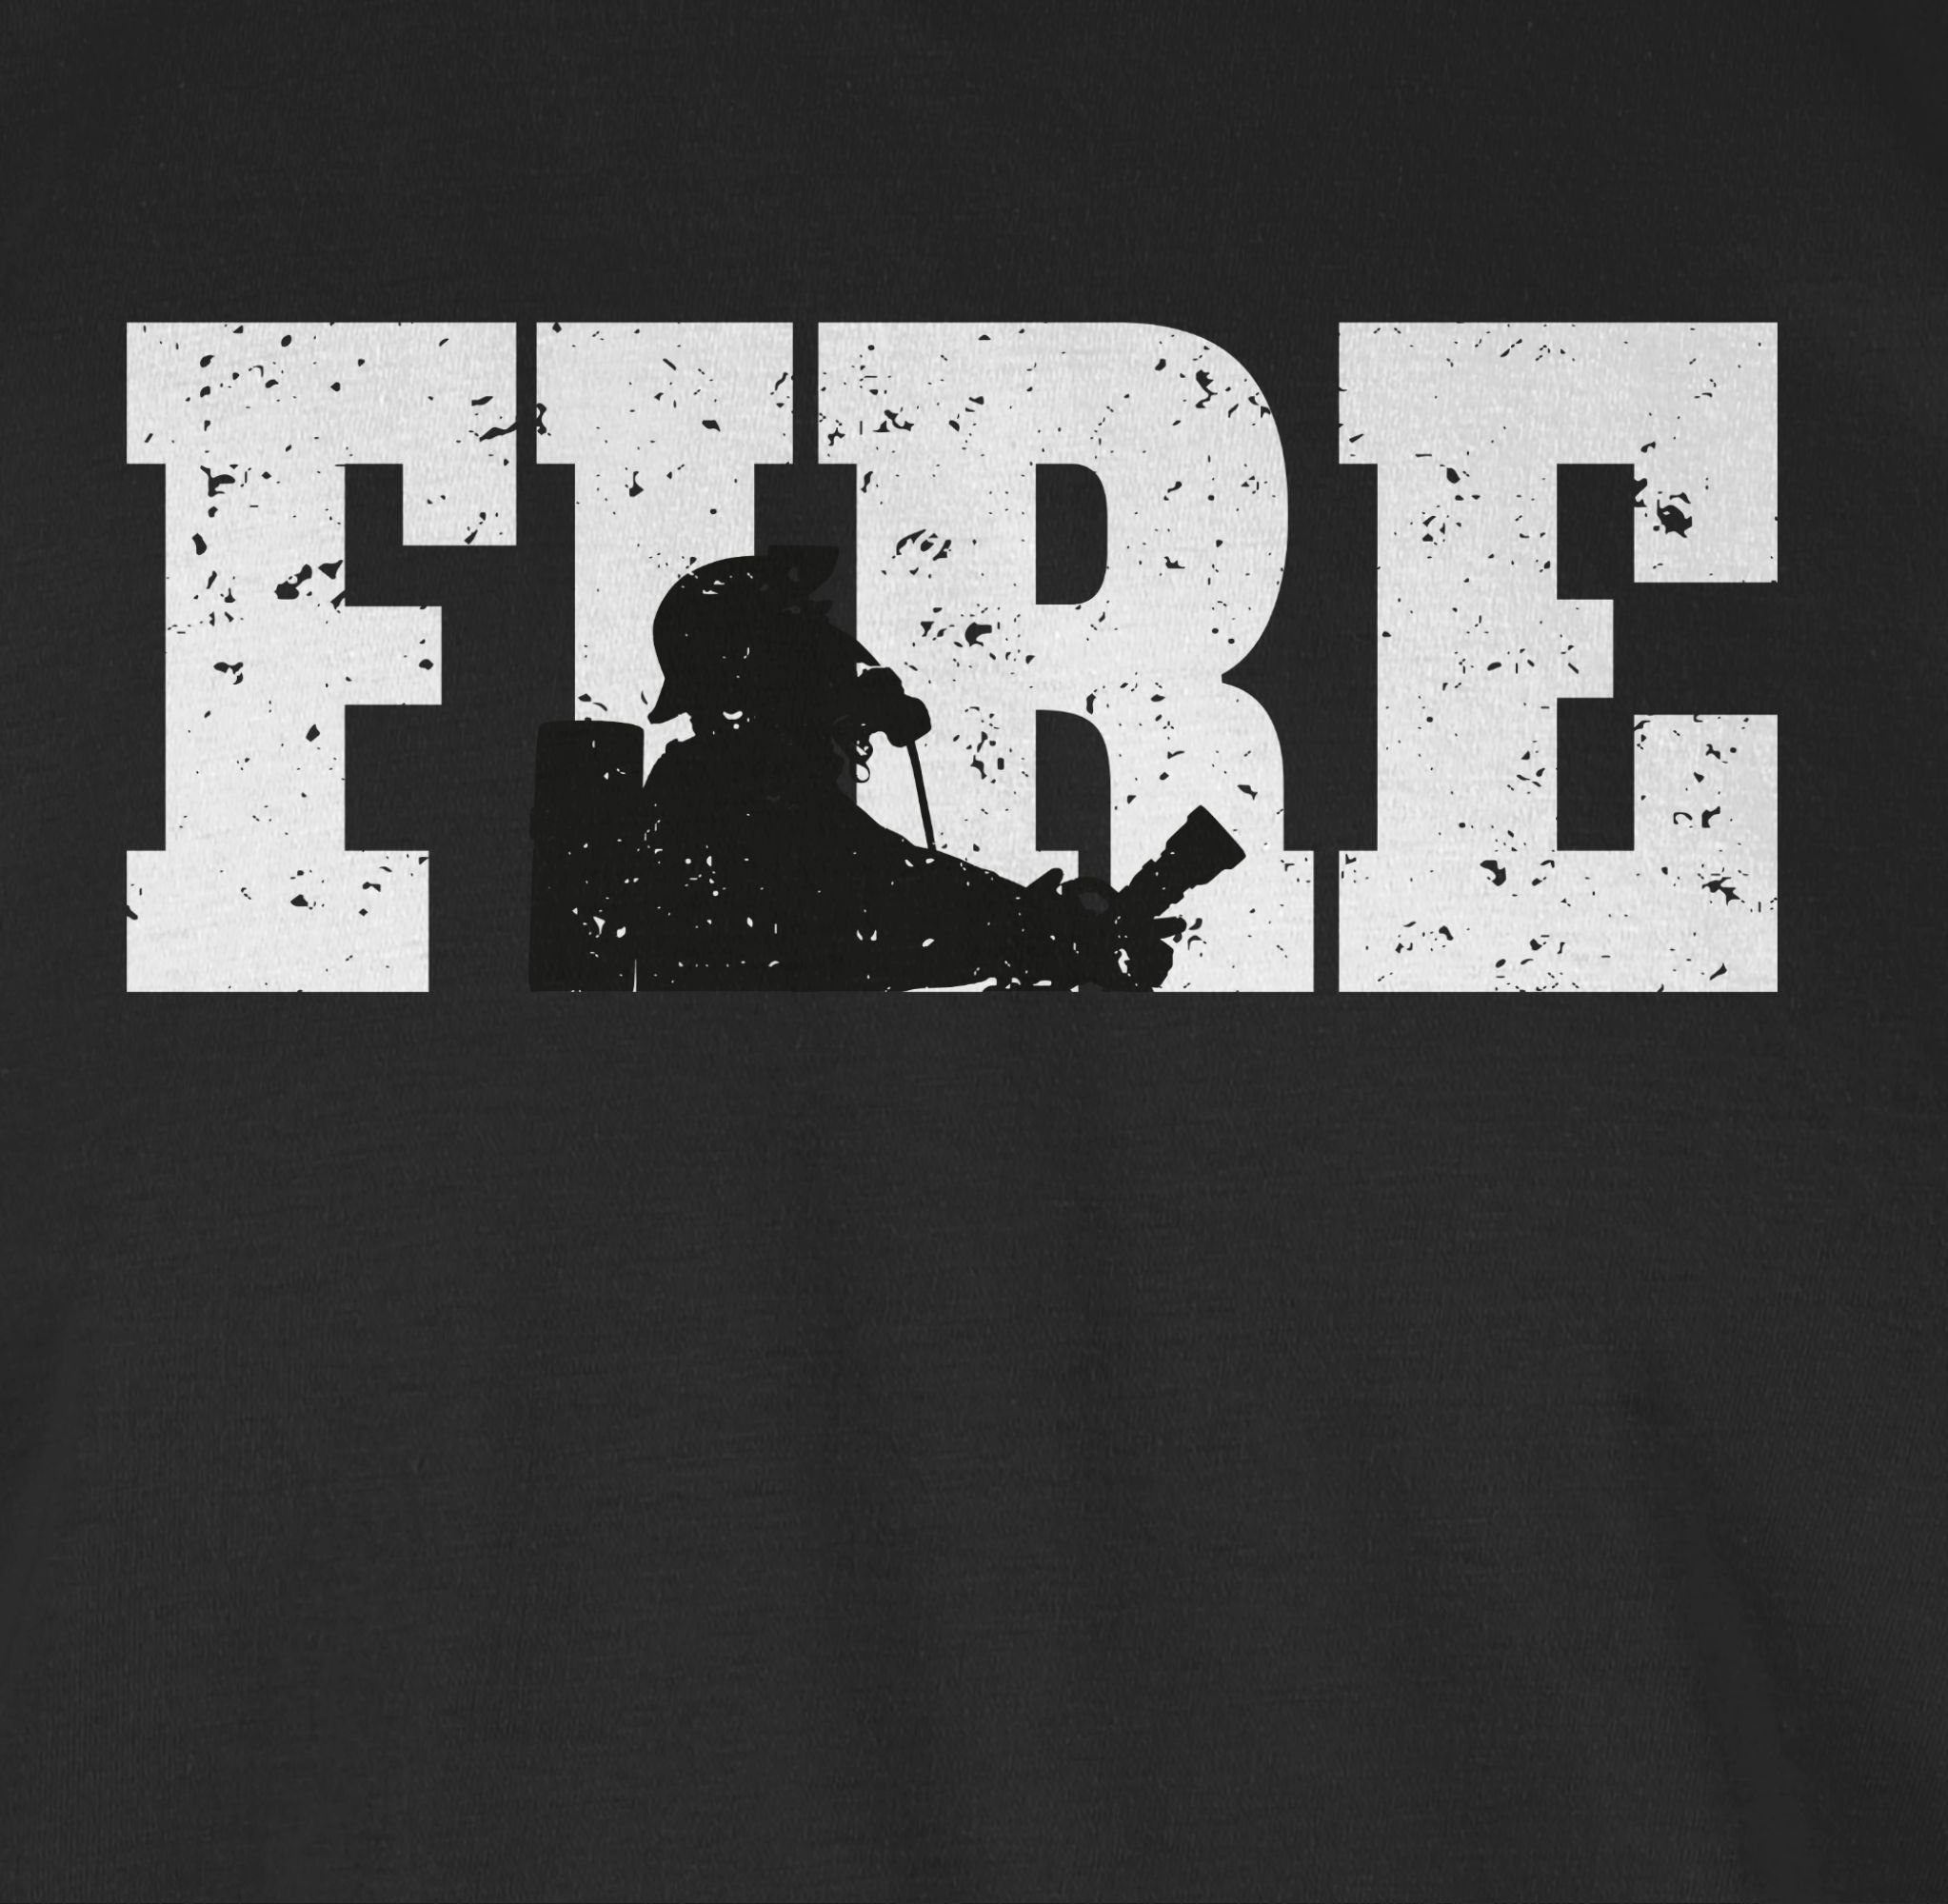 Shirtracer T-Shirt Fire Feuerwehr 2 Schwarz